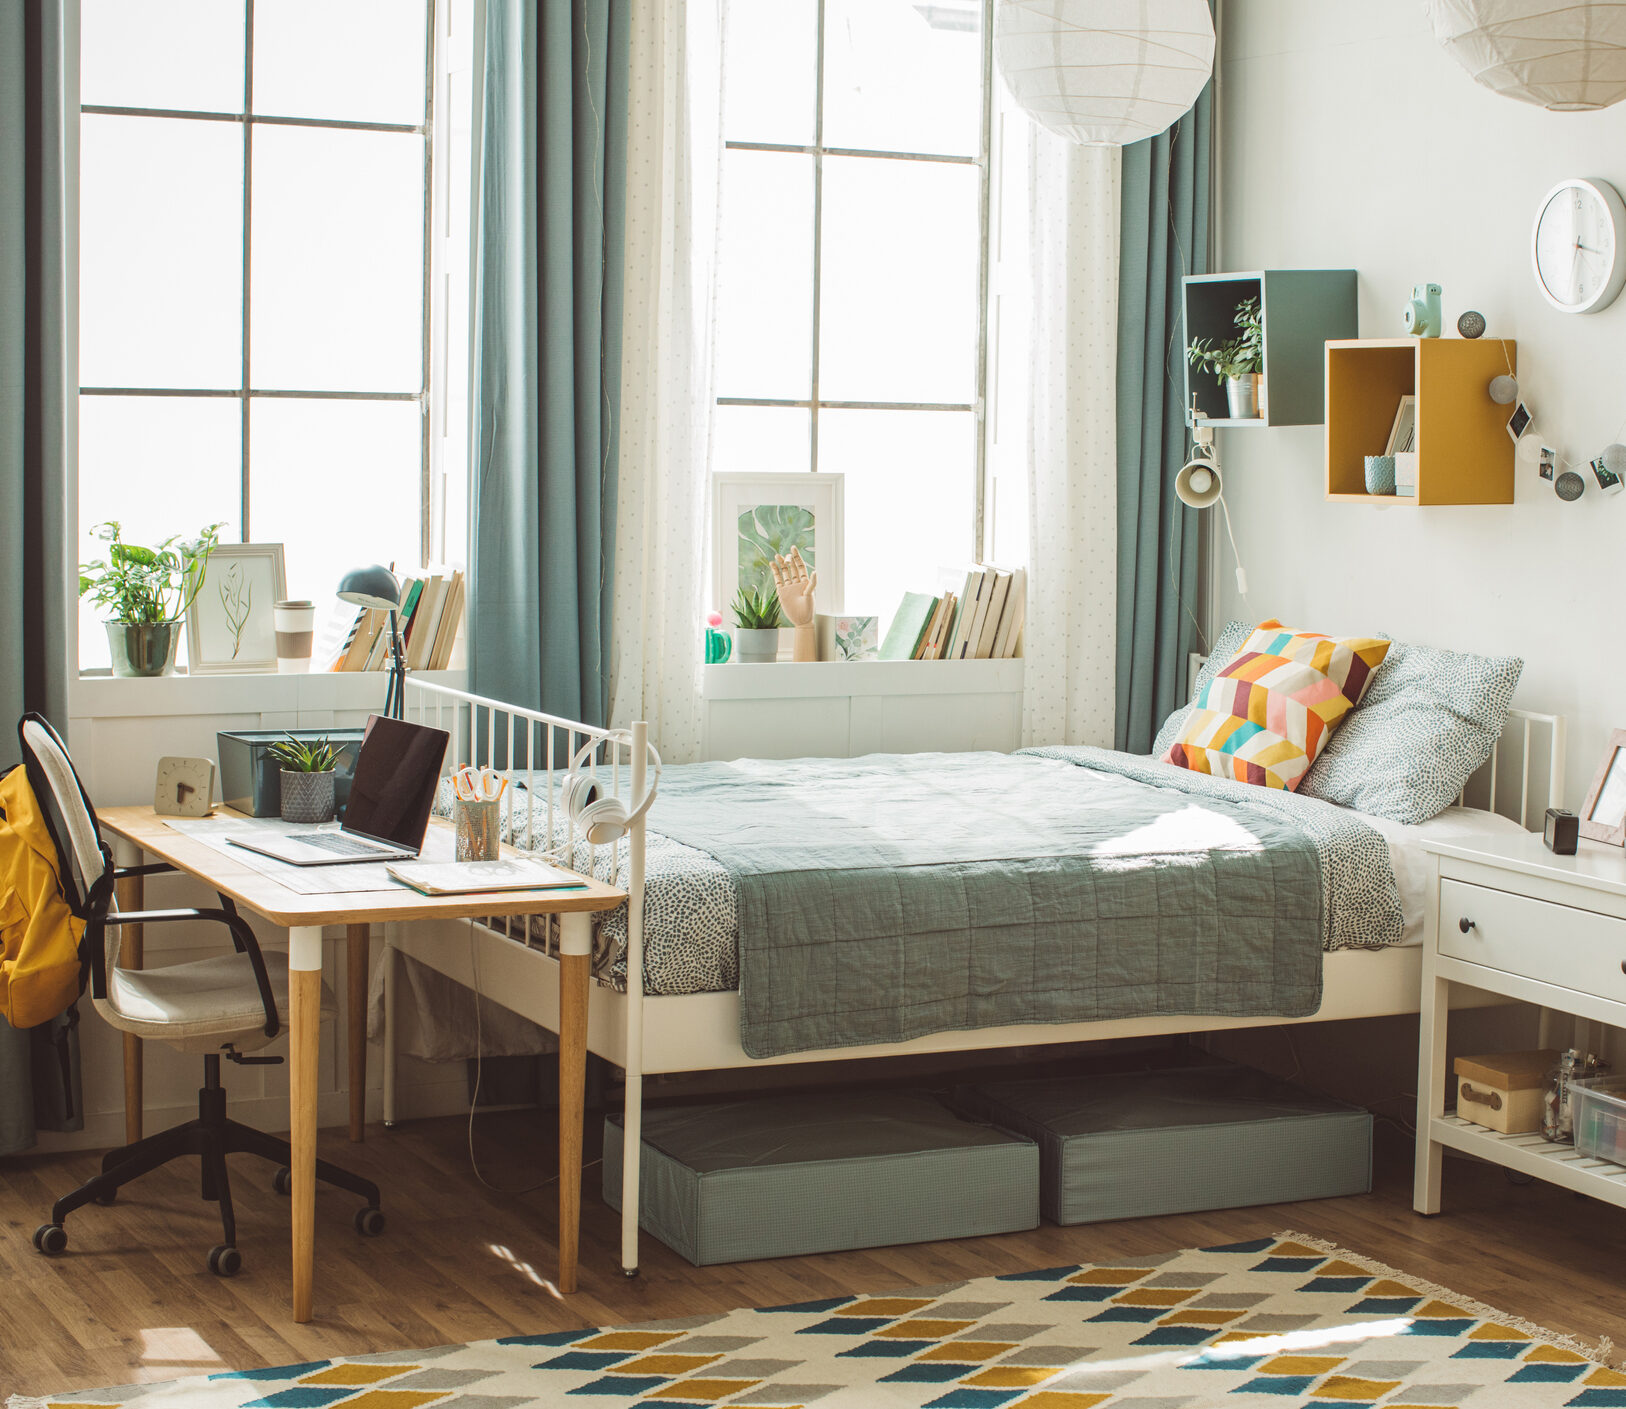 Aproveite de elementos coloridos para fazer a decoração de quarto pequeno, como móveis, almofadas e outros objetos.